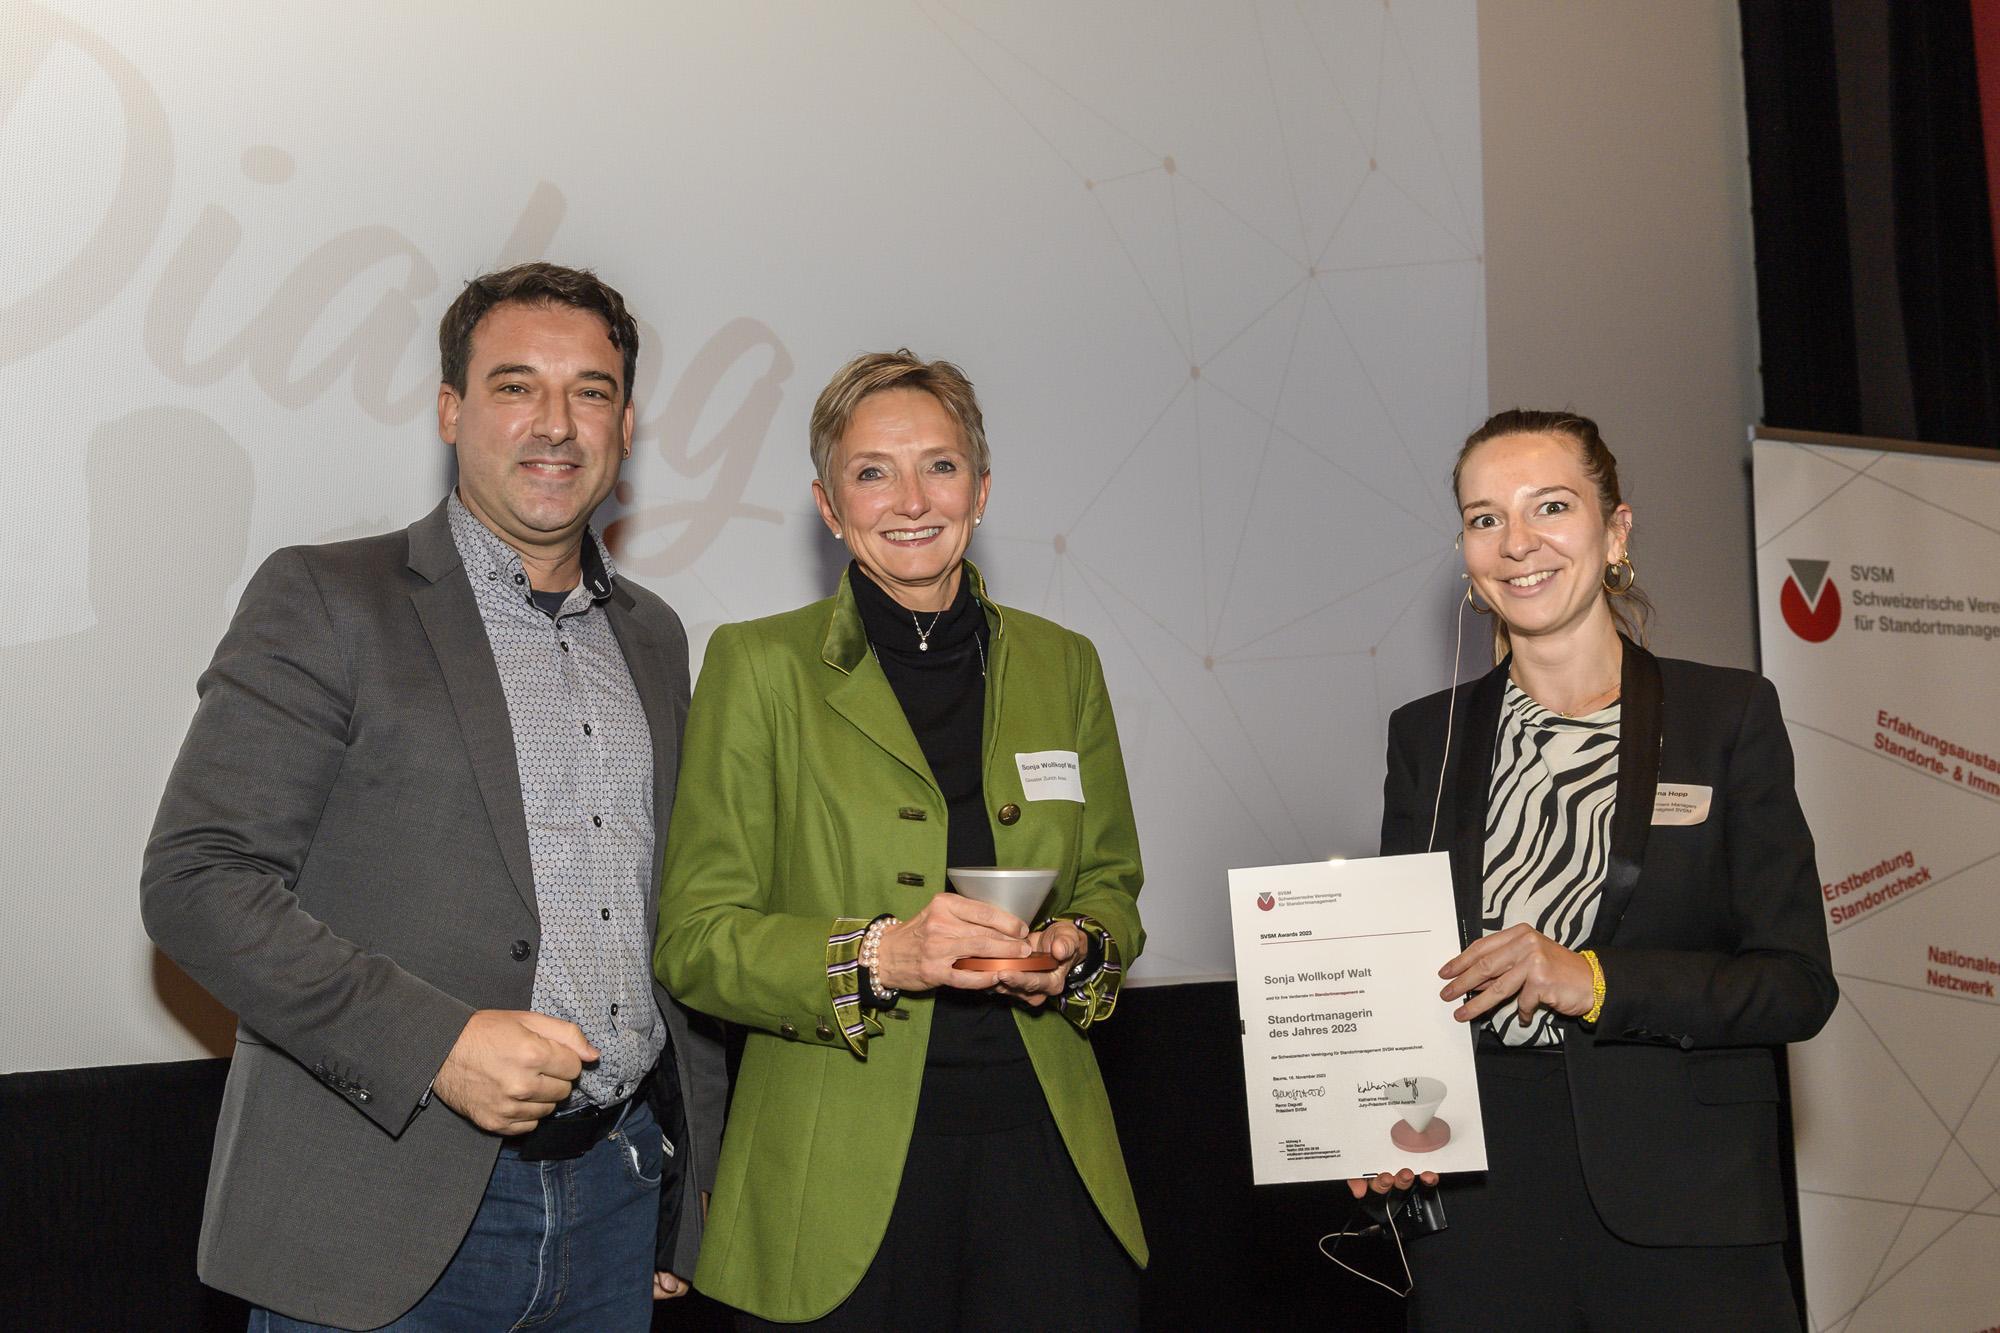 Sonja Wollkopf Walt wird als Standortmanagerin des Jahres ausgezeichnet